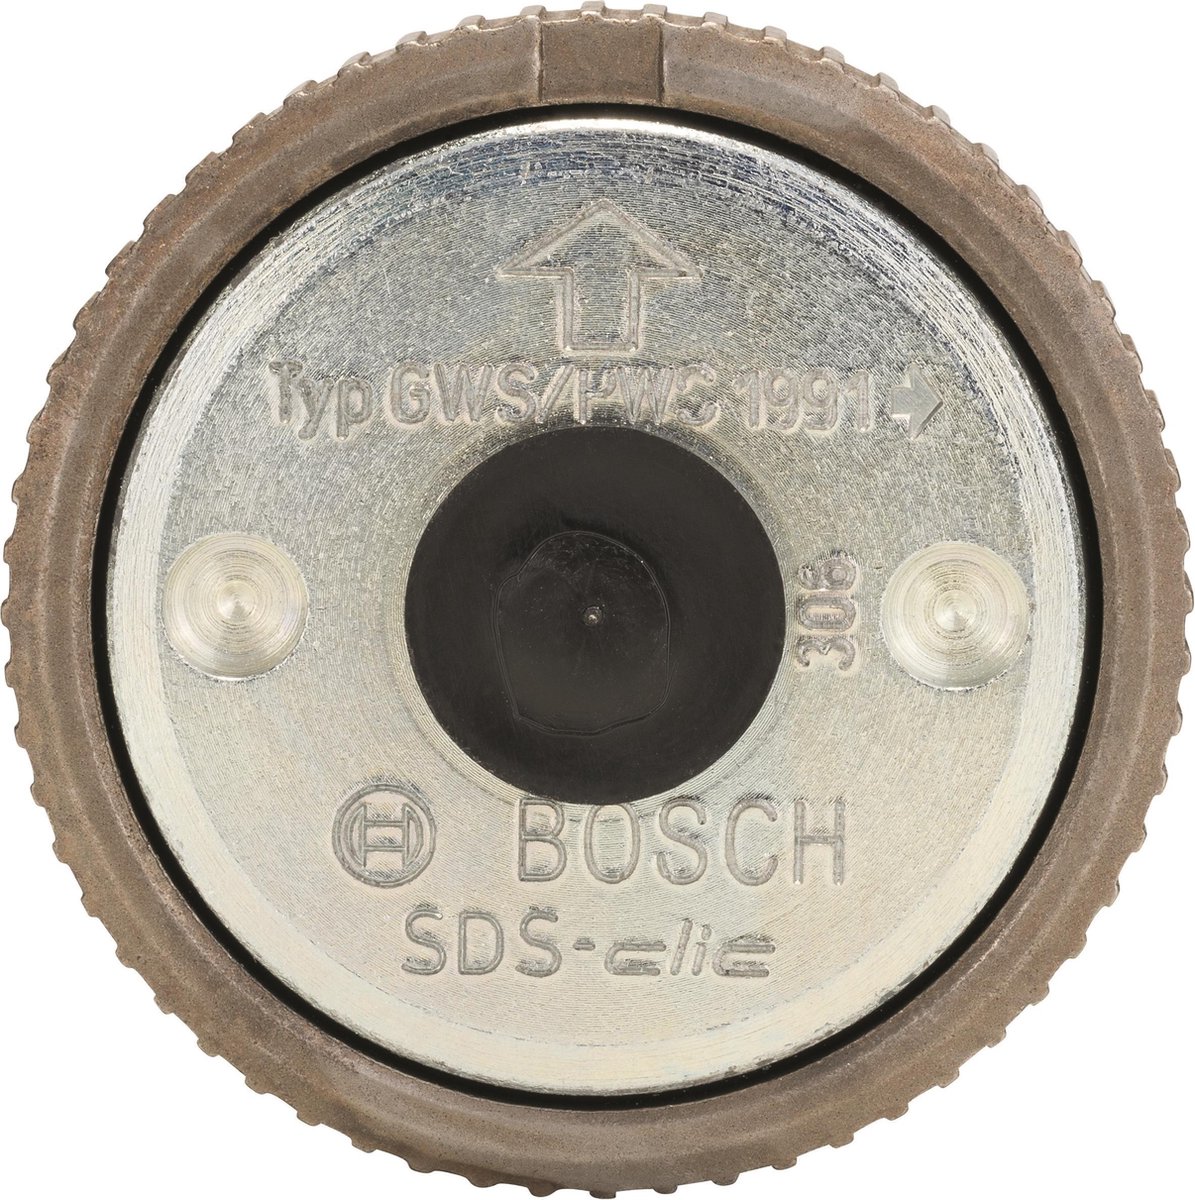 Bosch - Snelspanmoer